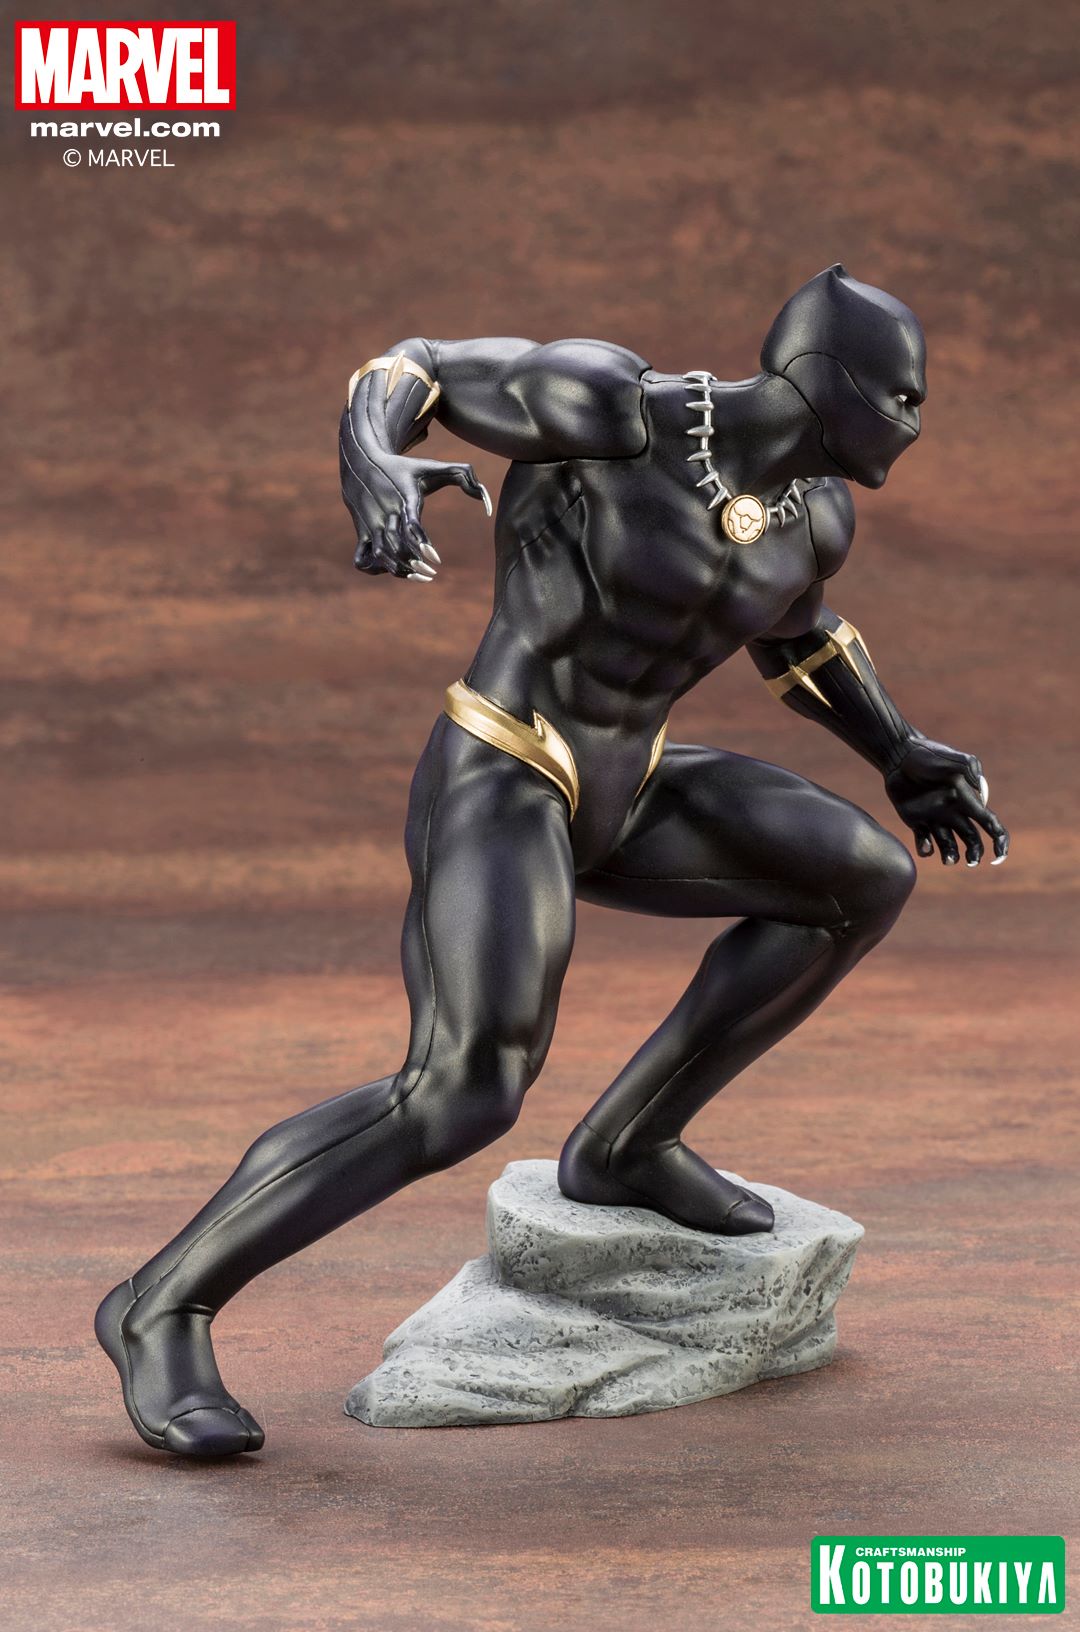 Kotobukiya Marvel Avenger Series ARTFX+ Black Panther Statue